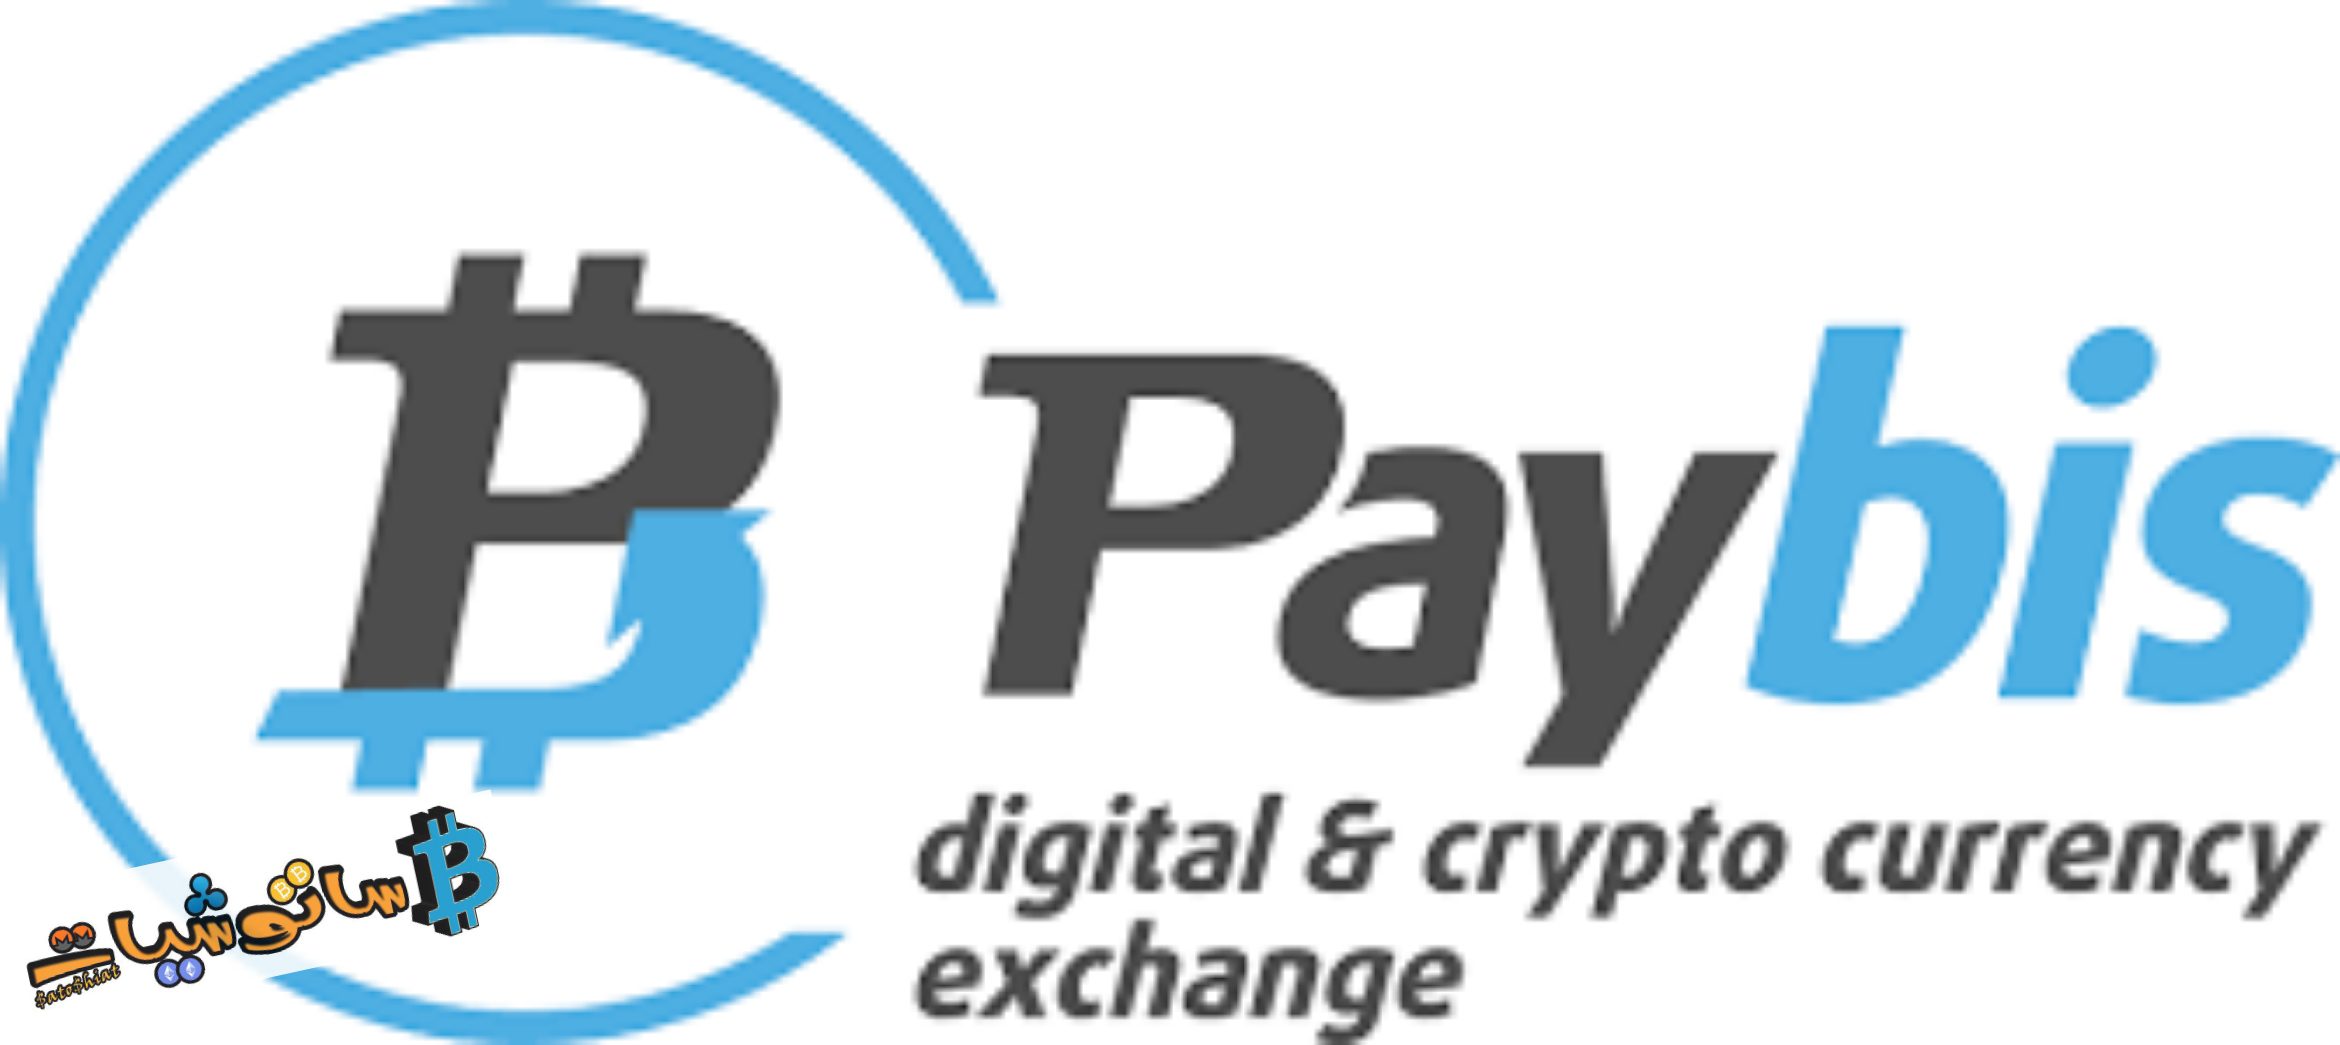 موقع Paybis